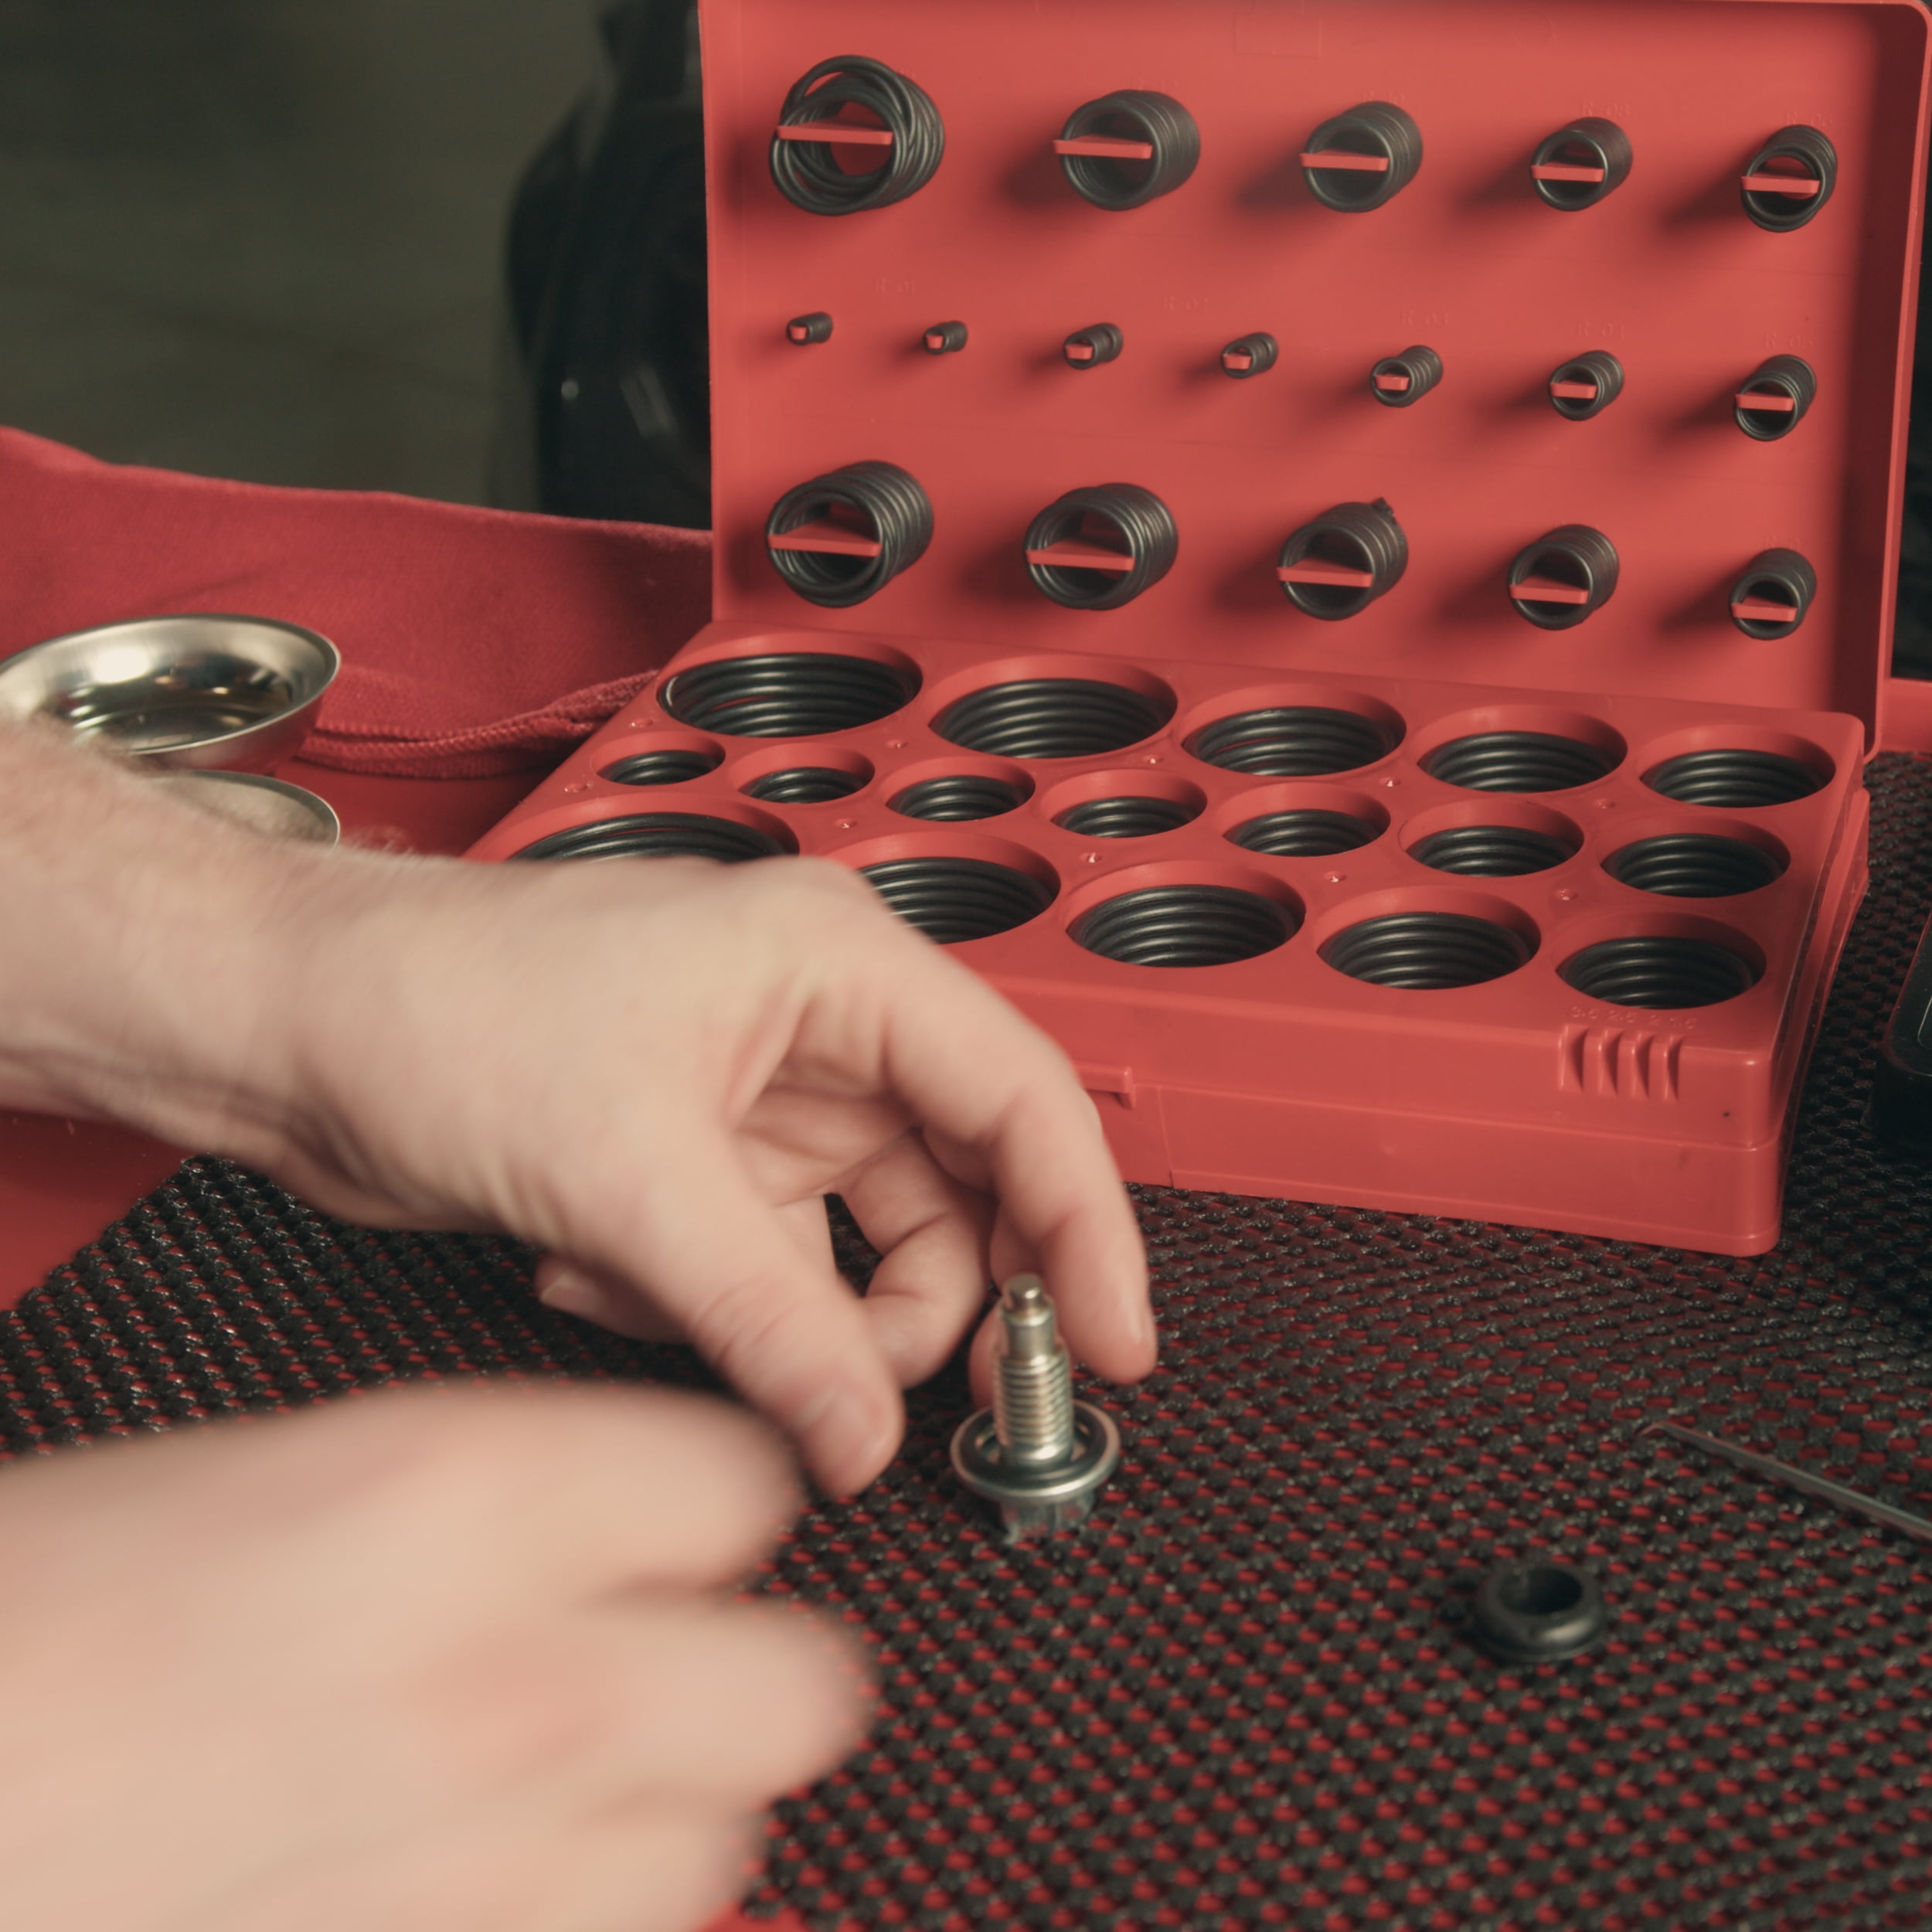 419pc Rubber O Ring Set / Kit Metric Sizes Garages / Plumbing New